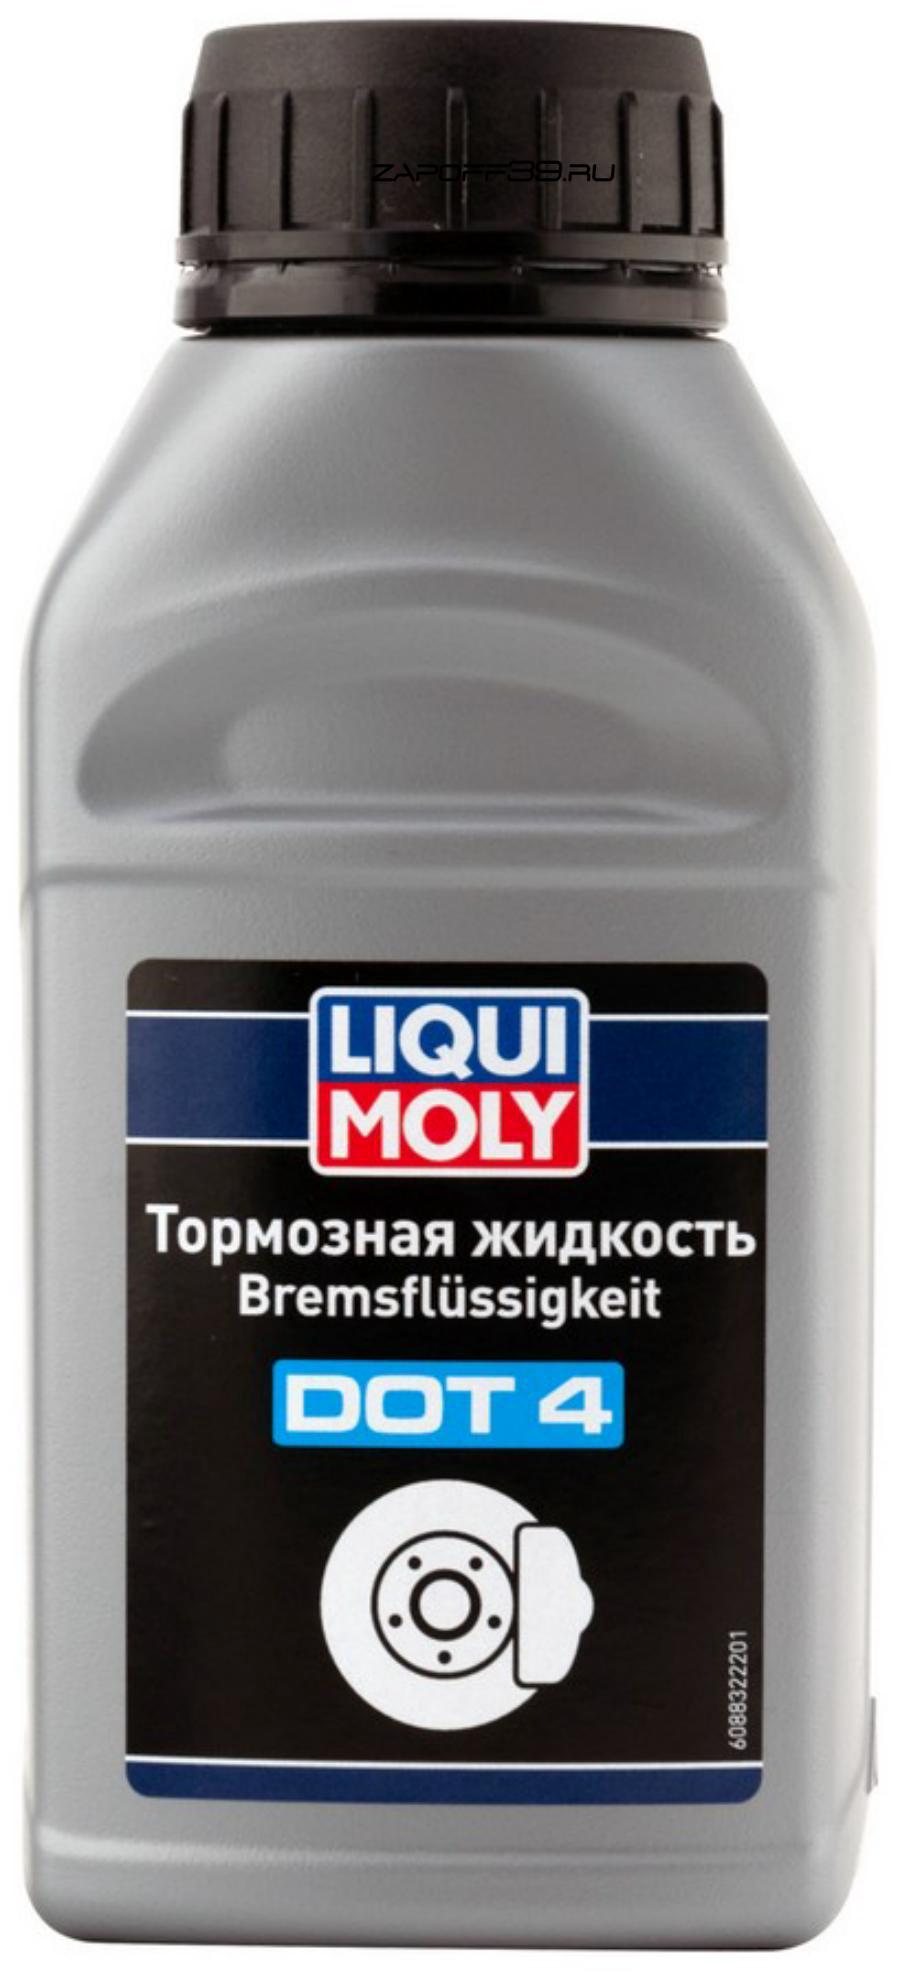 Тормозная жидкость Dot 4 1L купить в Калининграде